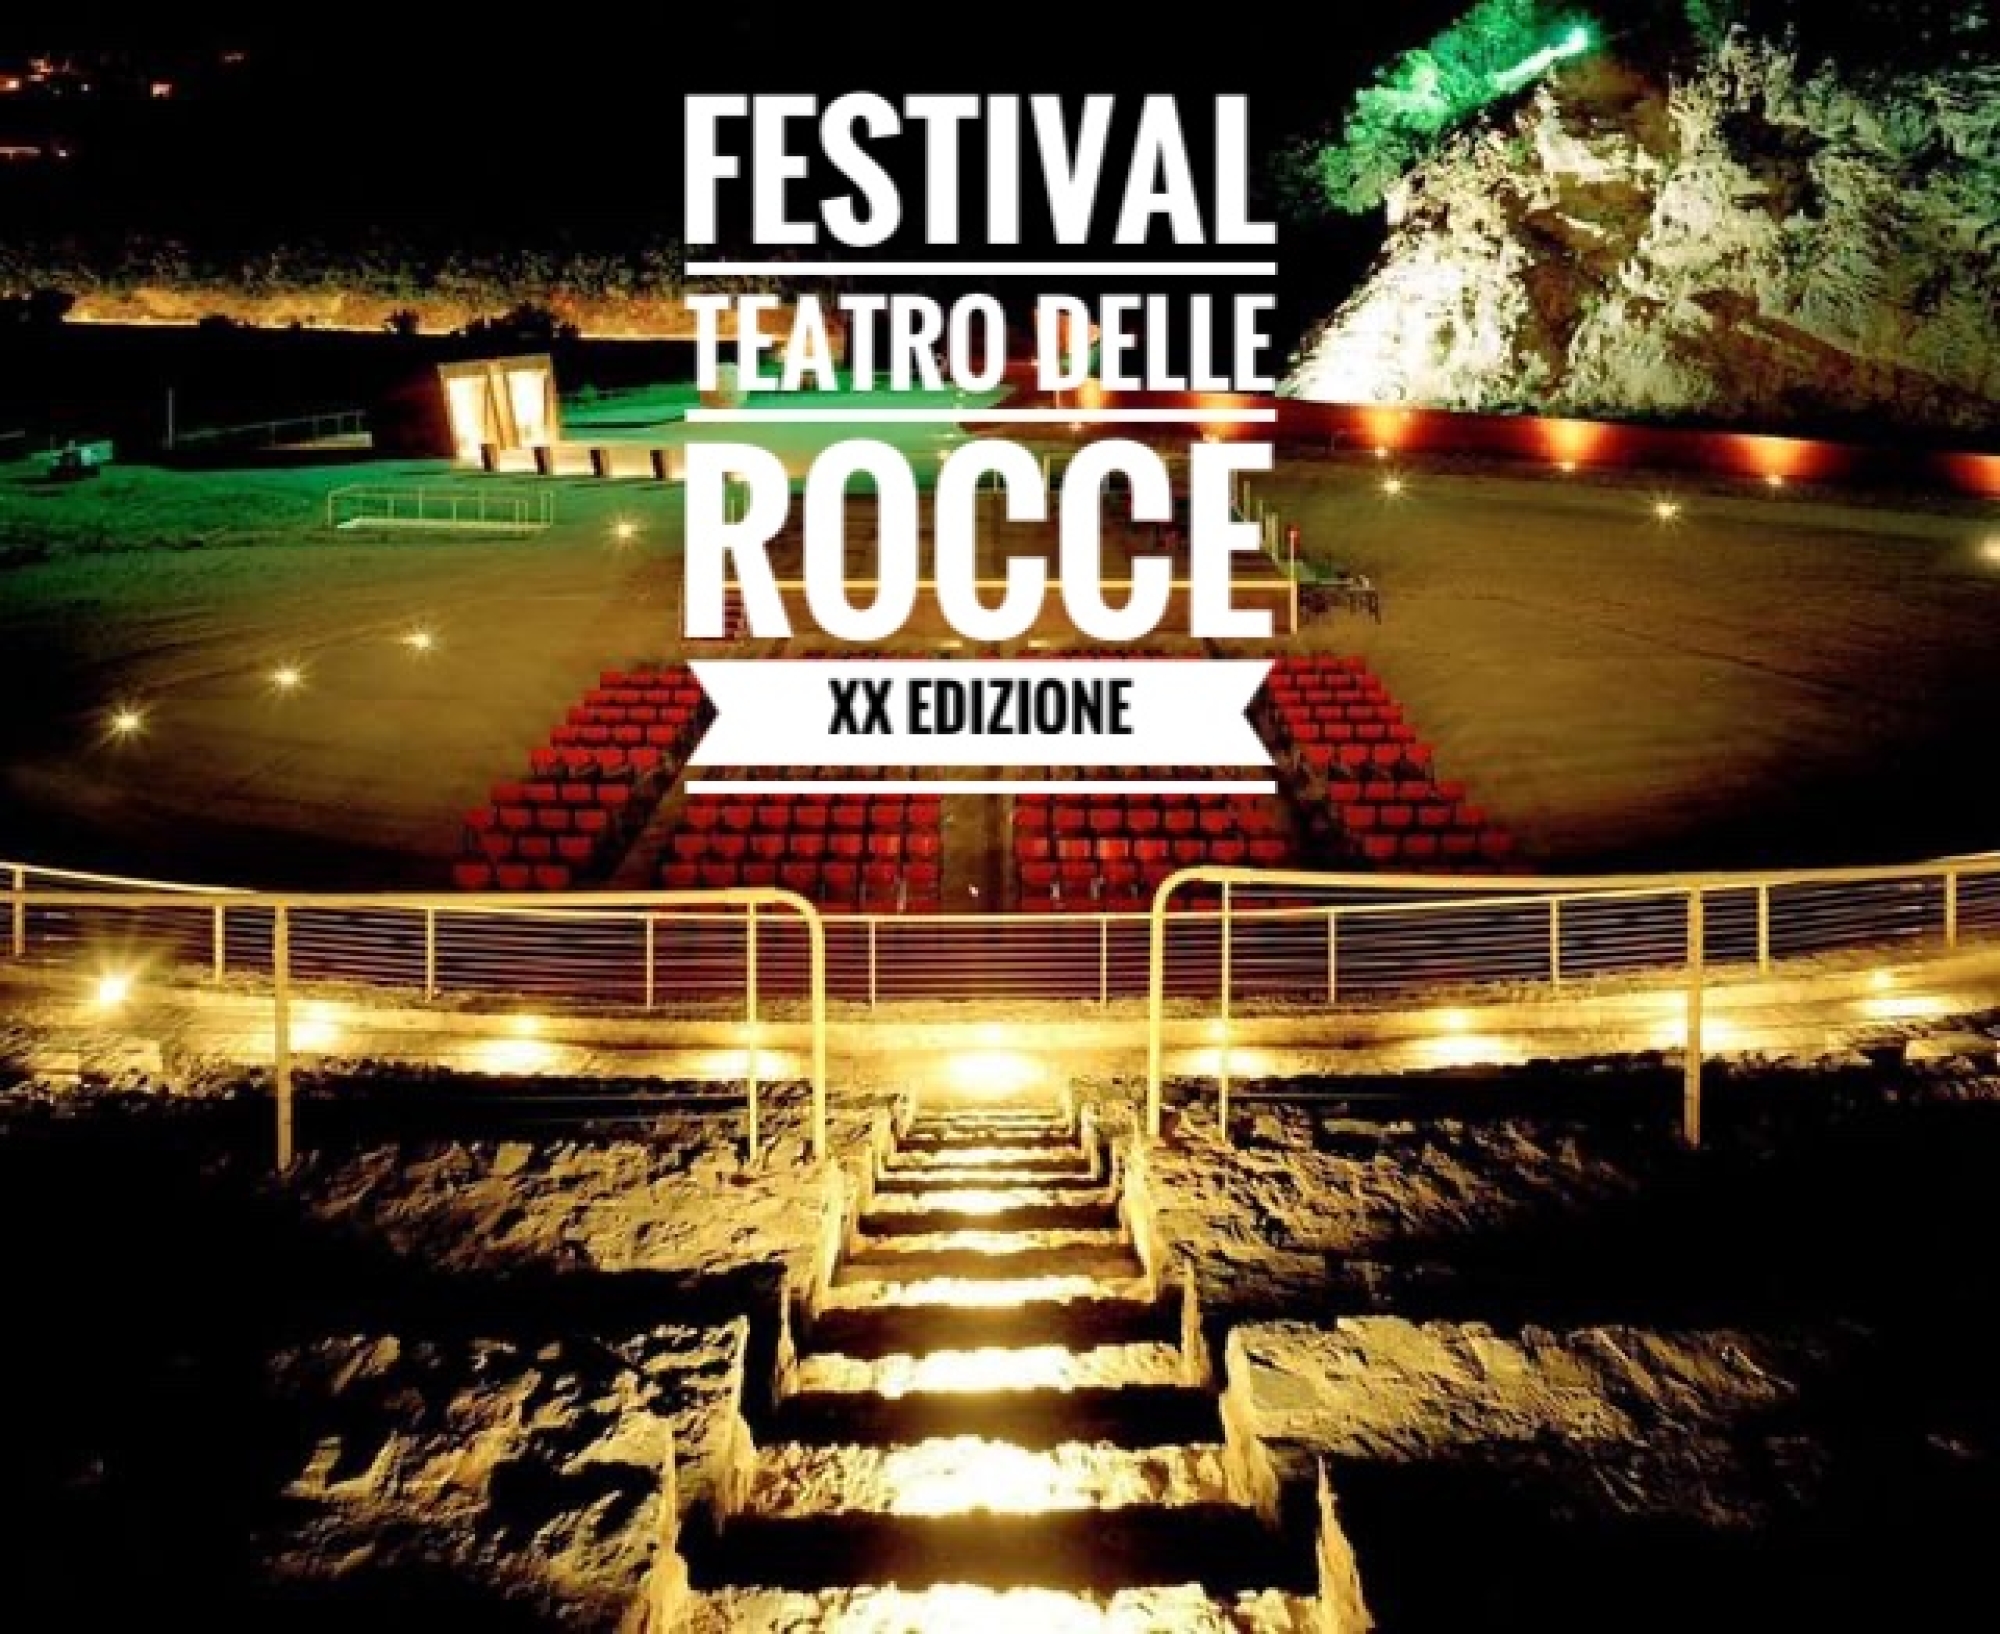 Festival Teatro delle Rocce - XX edizione